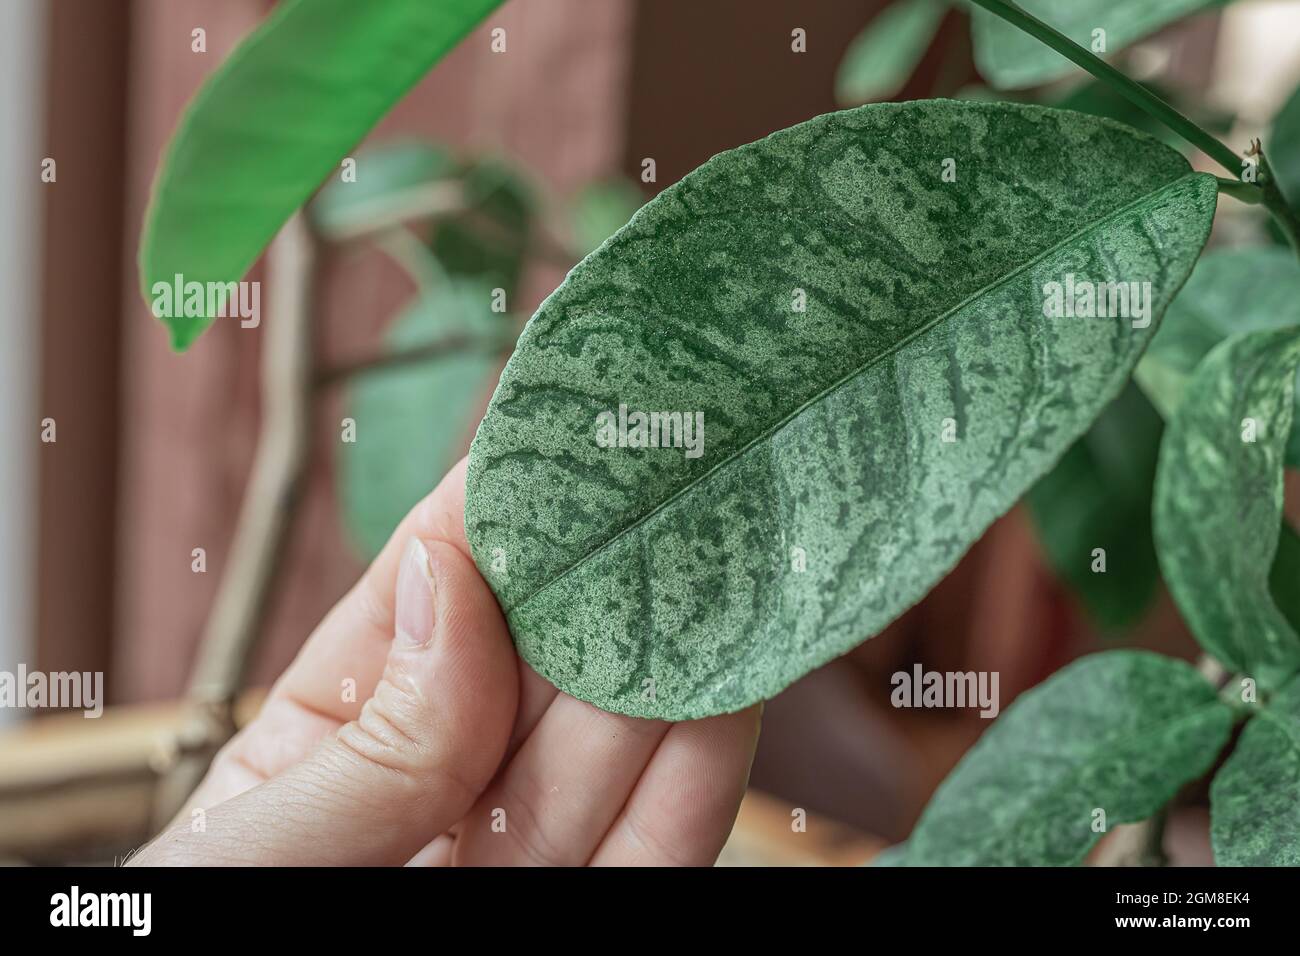 Lemon tree disease immagini e fotografie stock ad alta risoluzione - Alamy